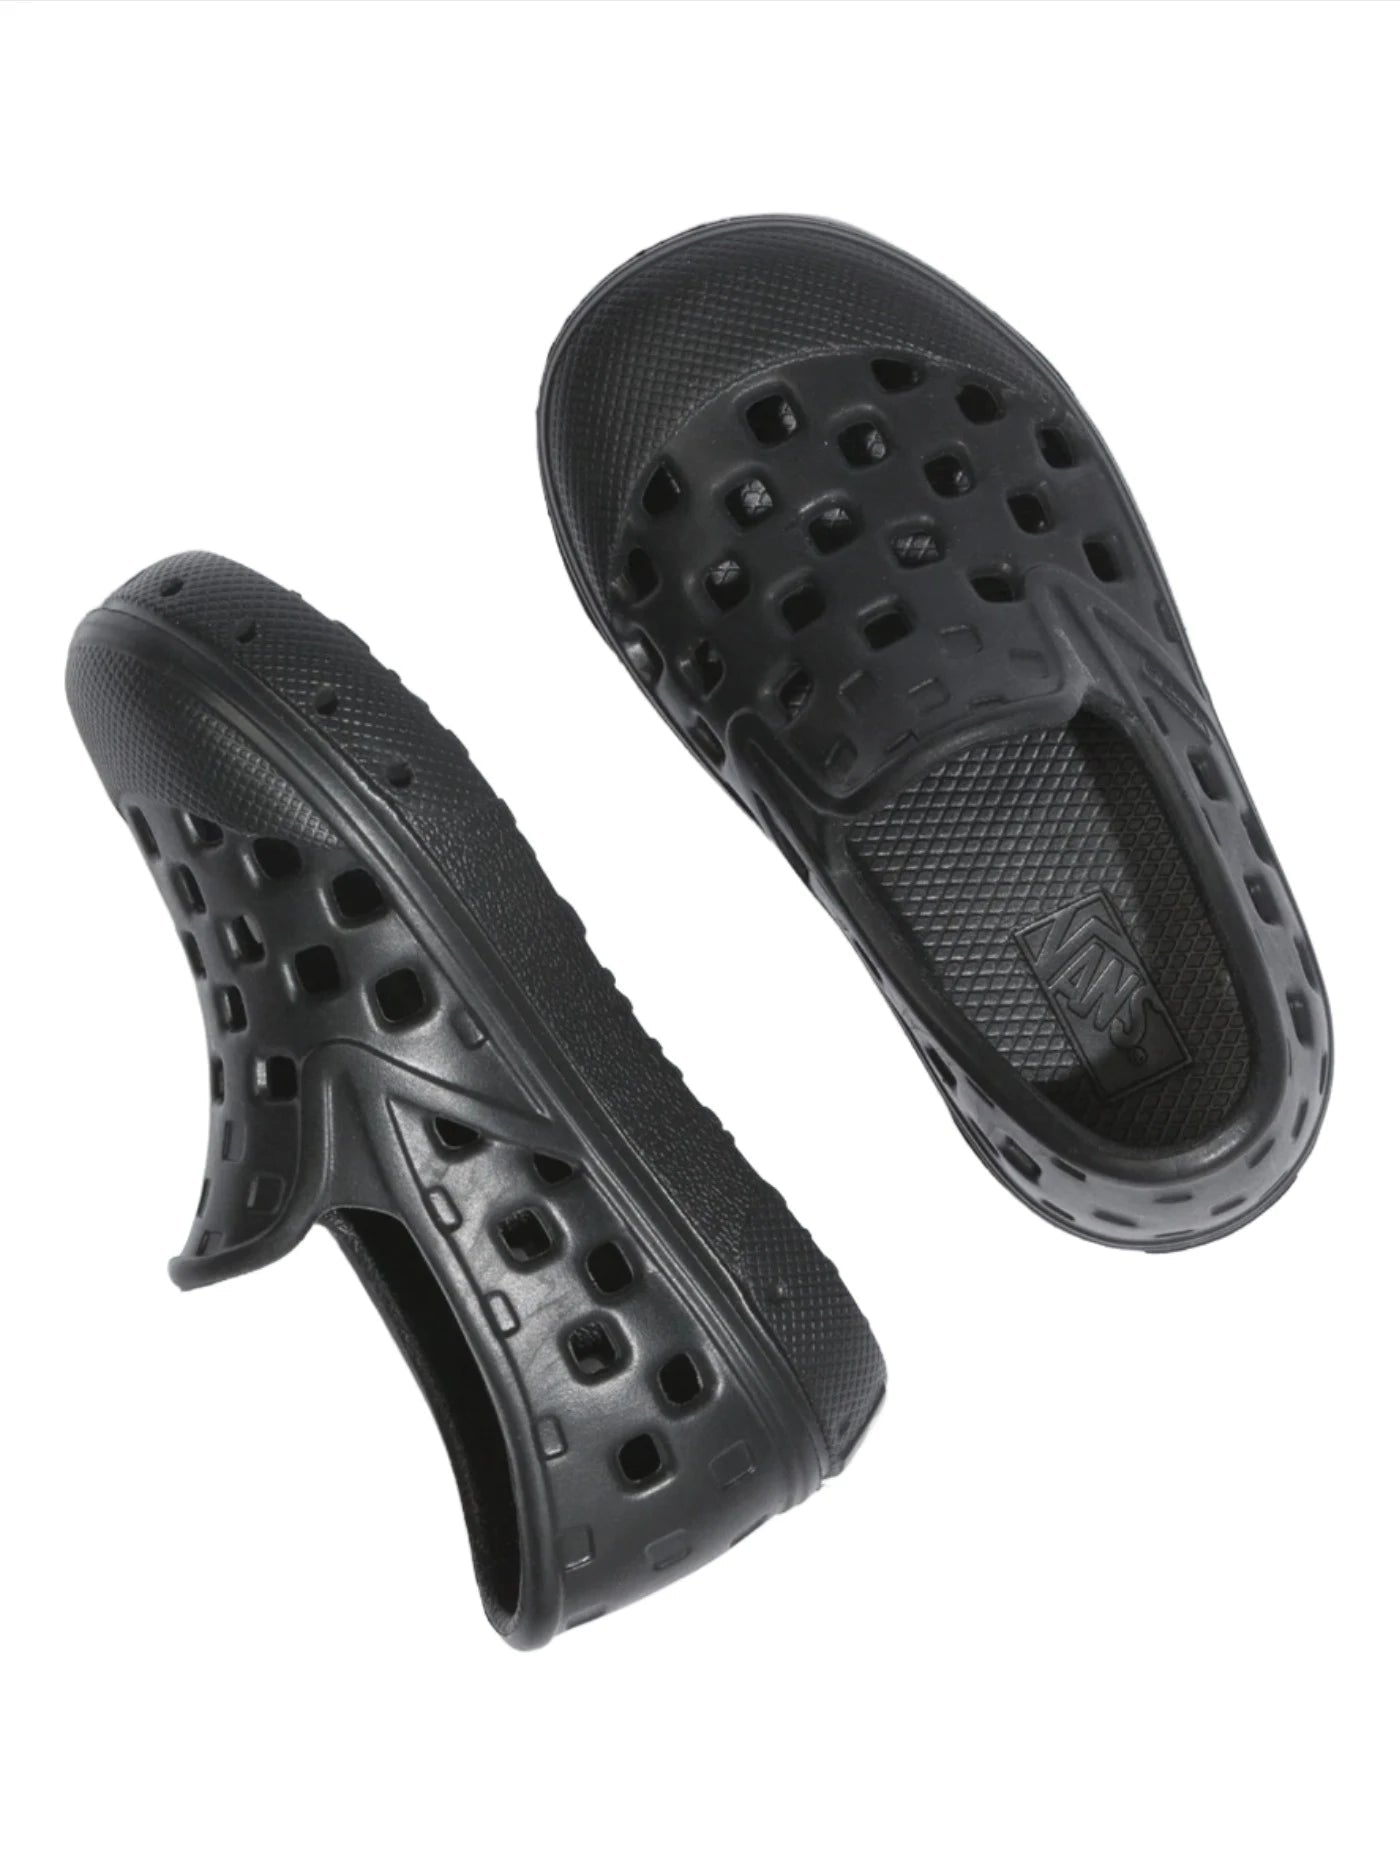 VANS Kids Slip-On TRK Shoes Black Youth Sandals Vans 